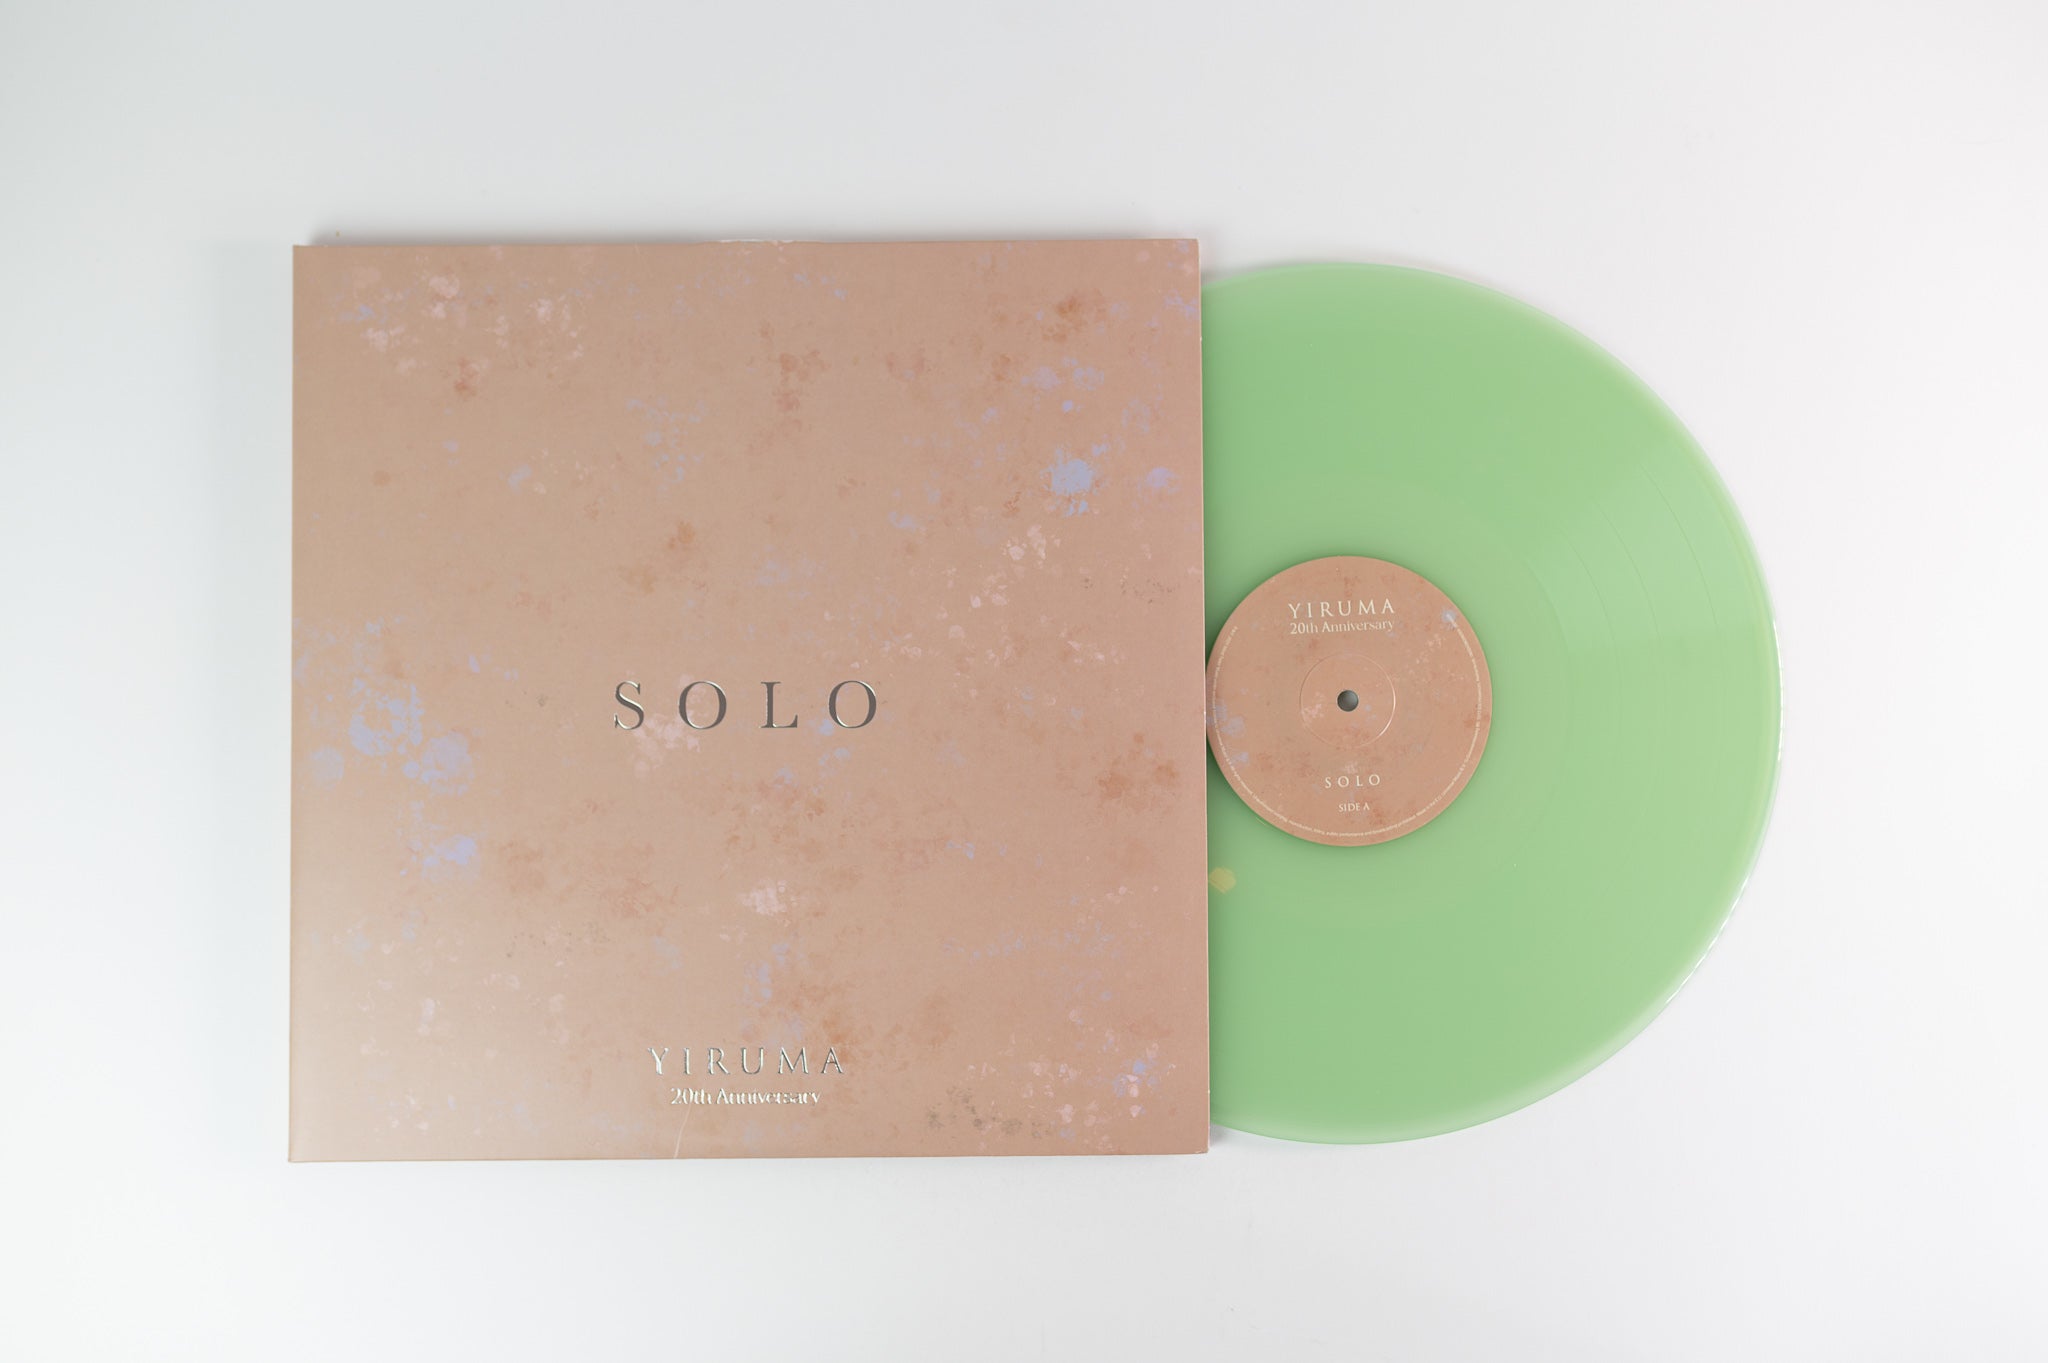 Yiruma - Solo on Mild Tailor Music - Green Vinyl